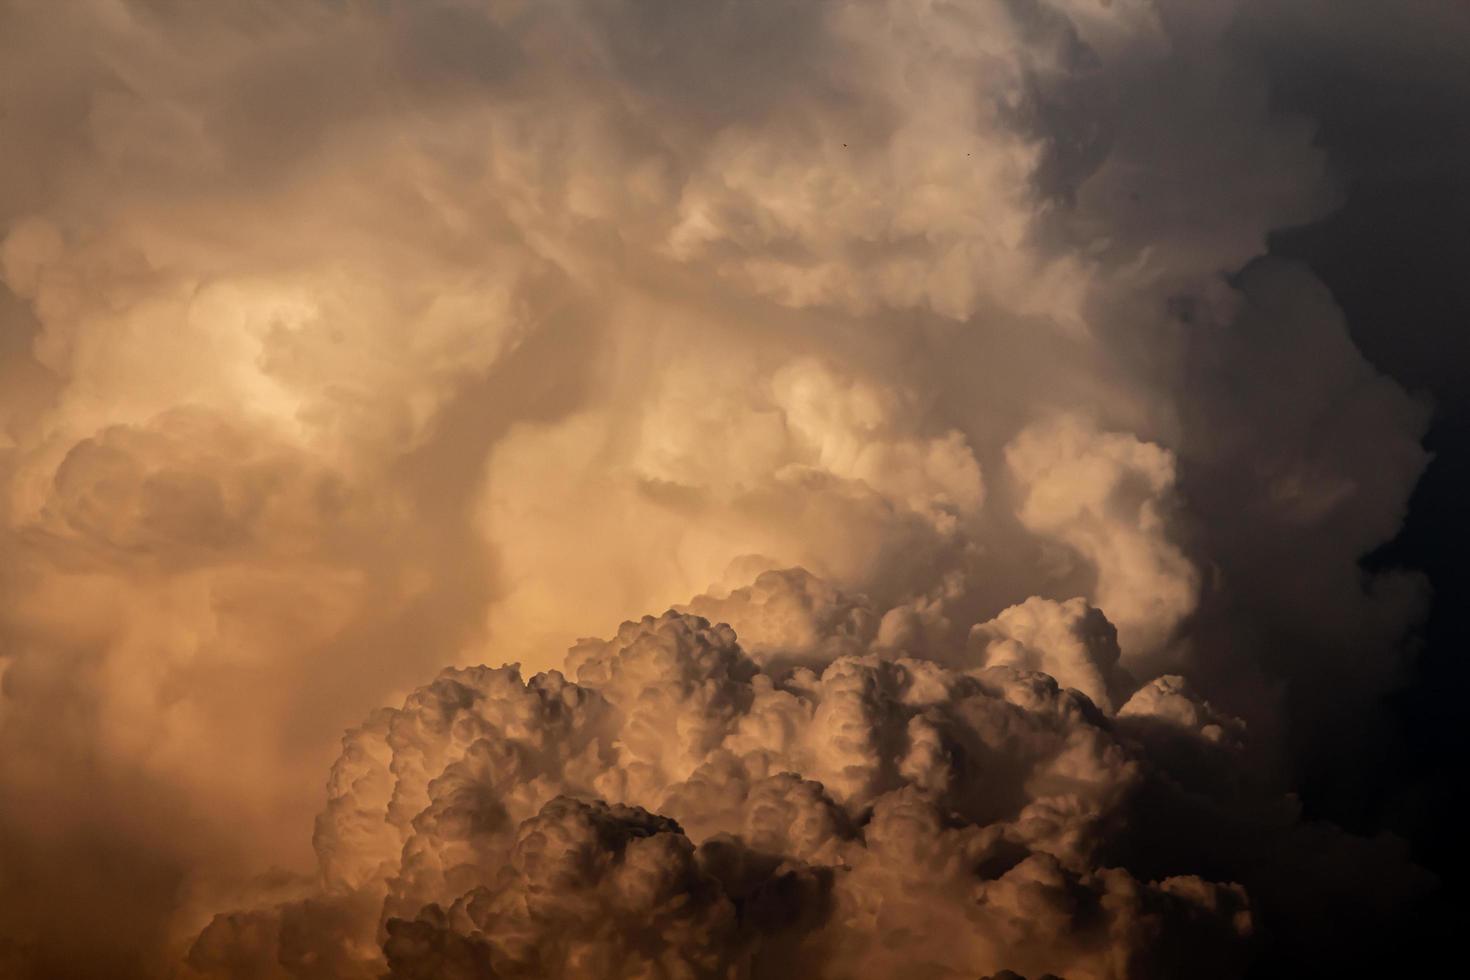 uma nuvem laranja formou uma nuvem de chuva uma noite foto